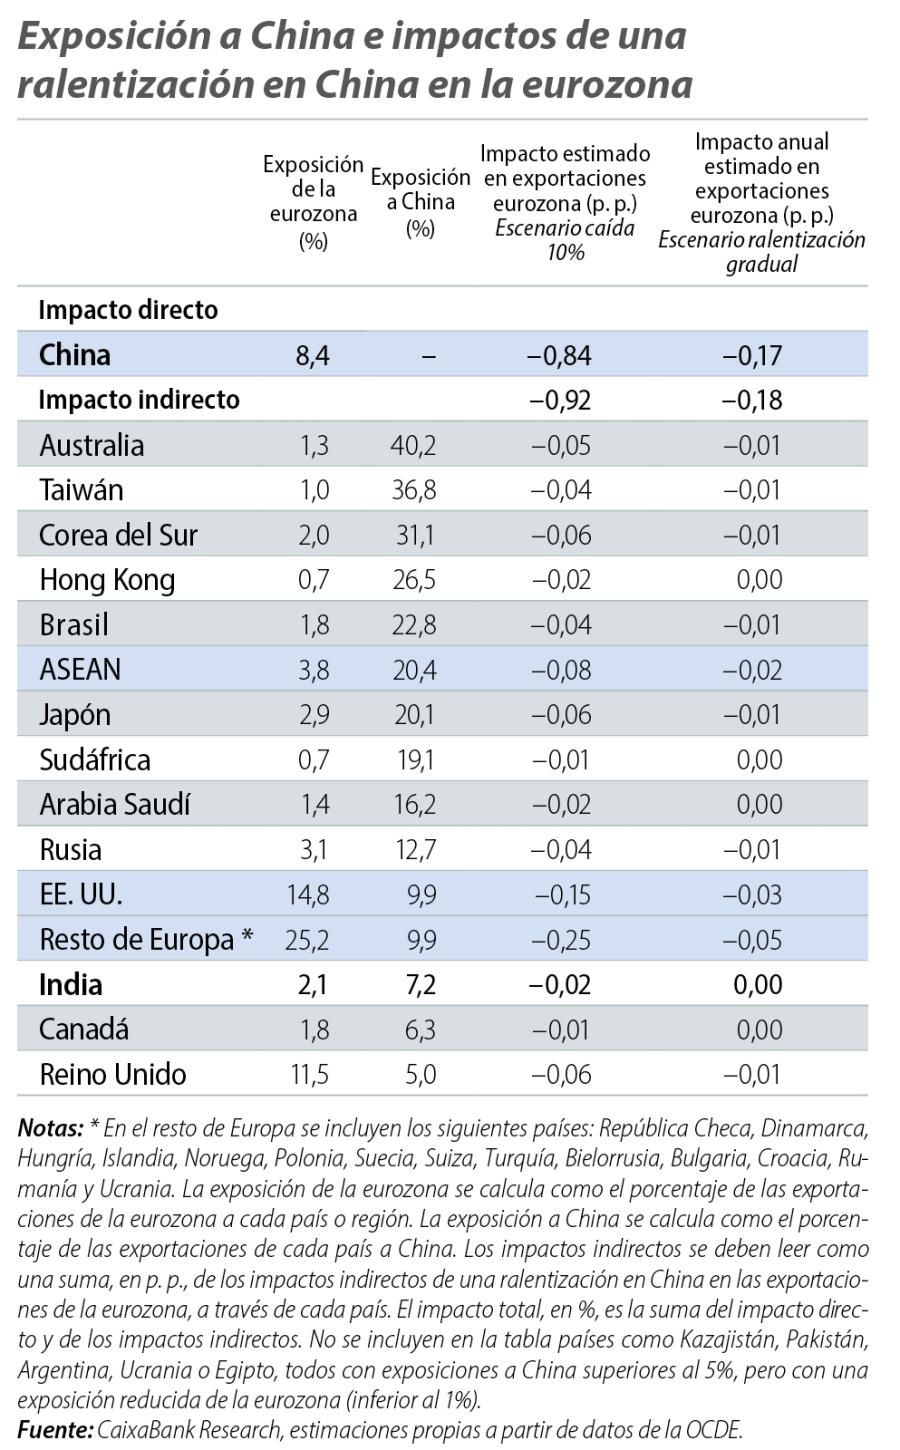 Exposición a China e impactos de una ralentización en China en la eurozona